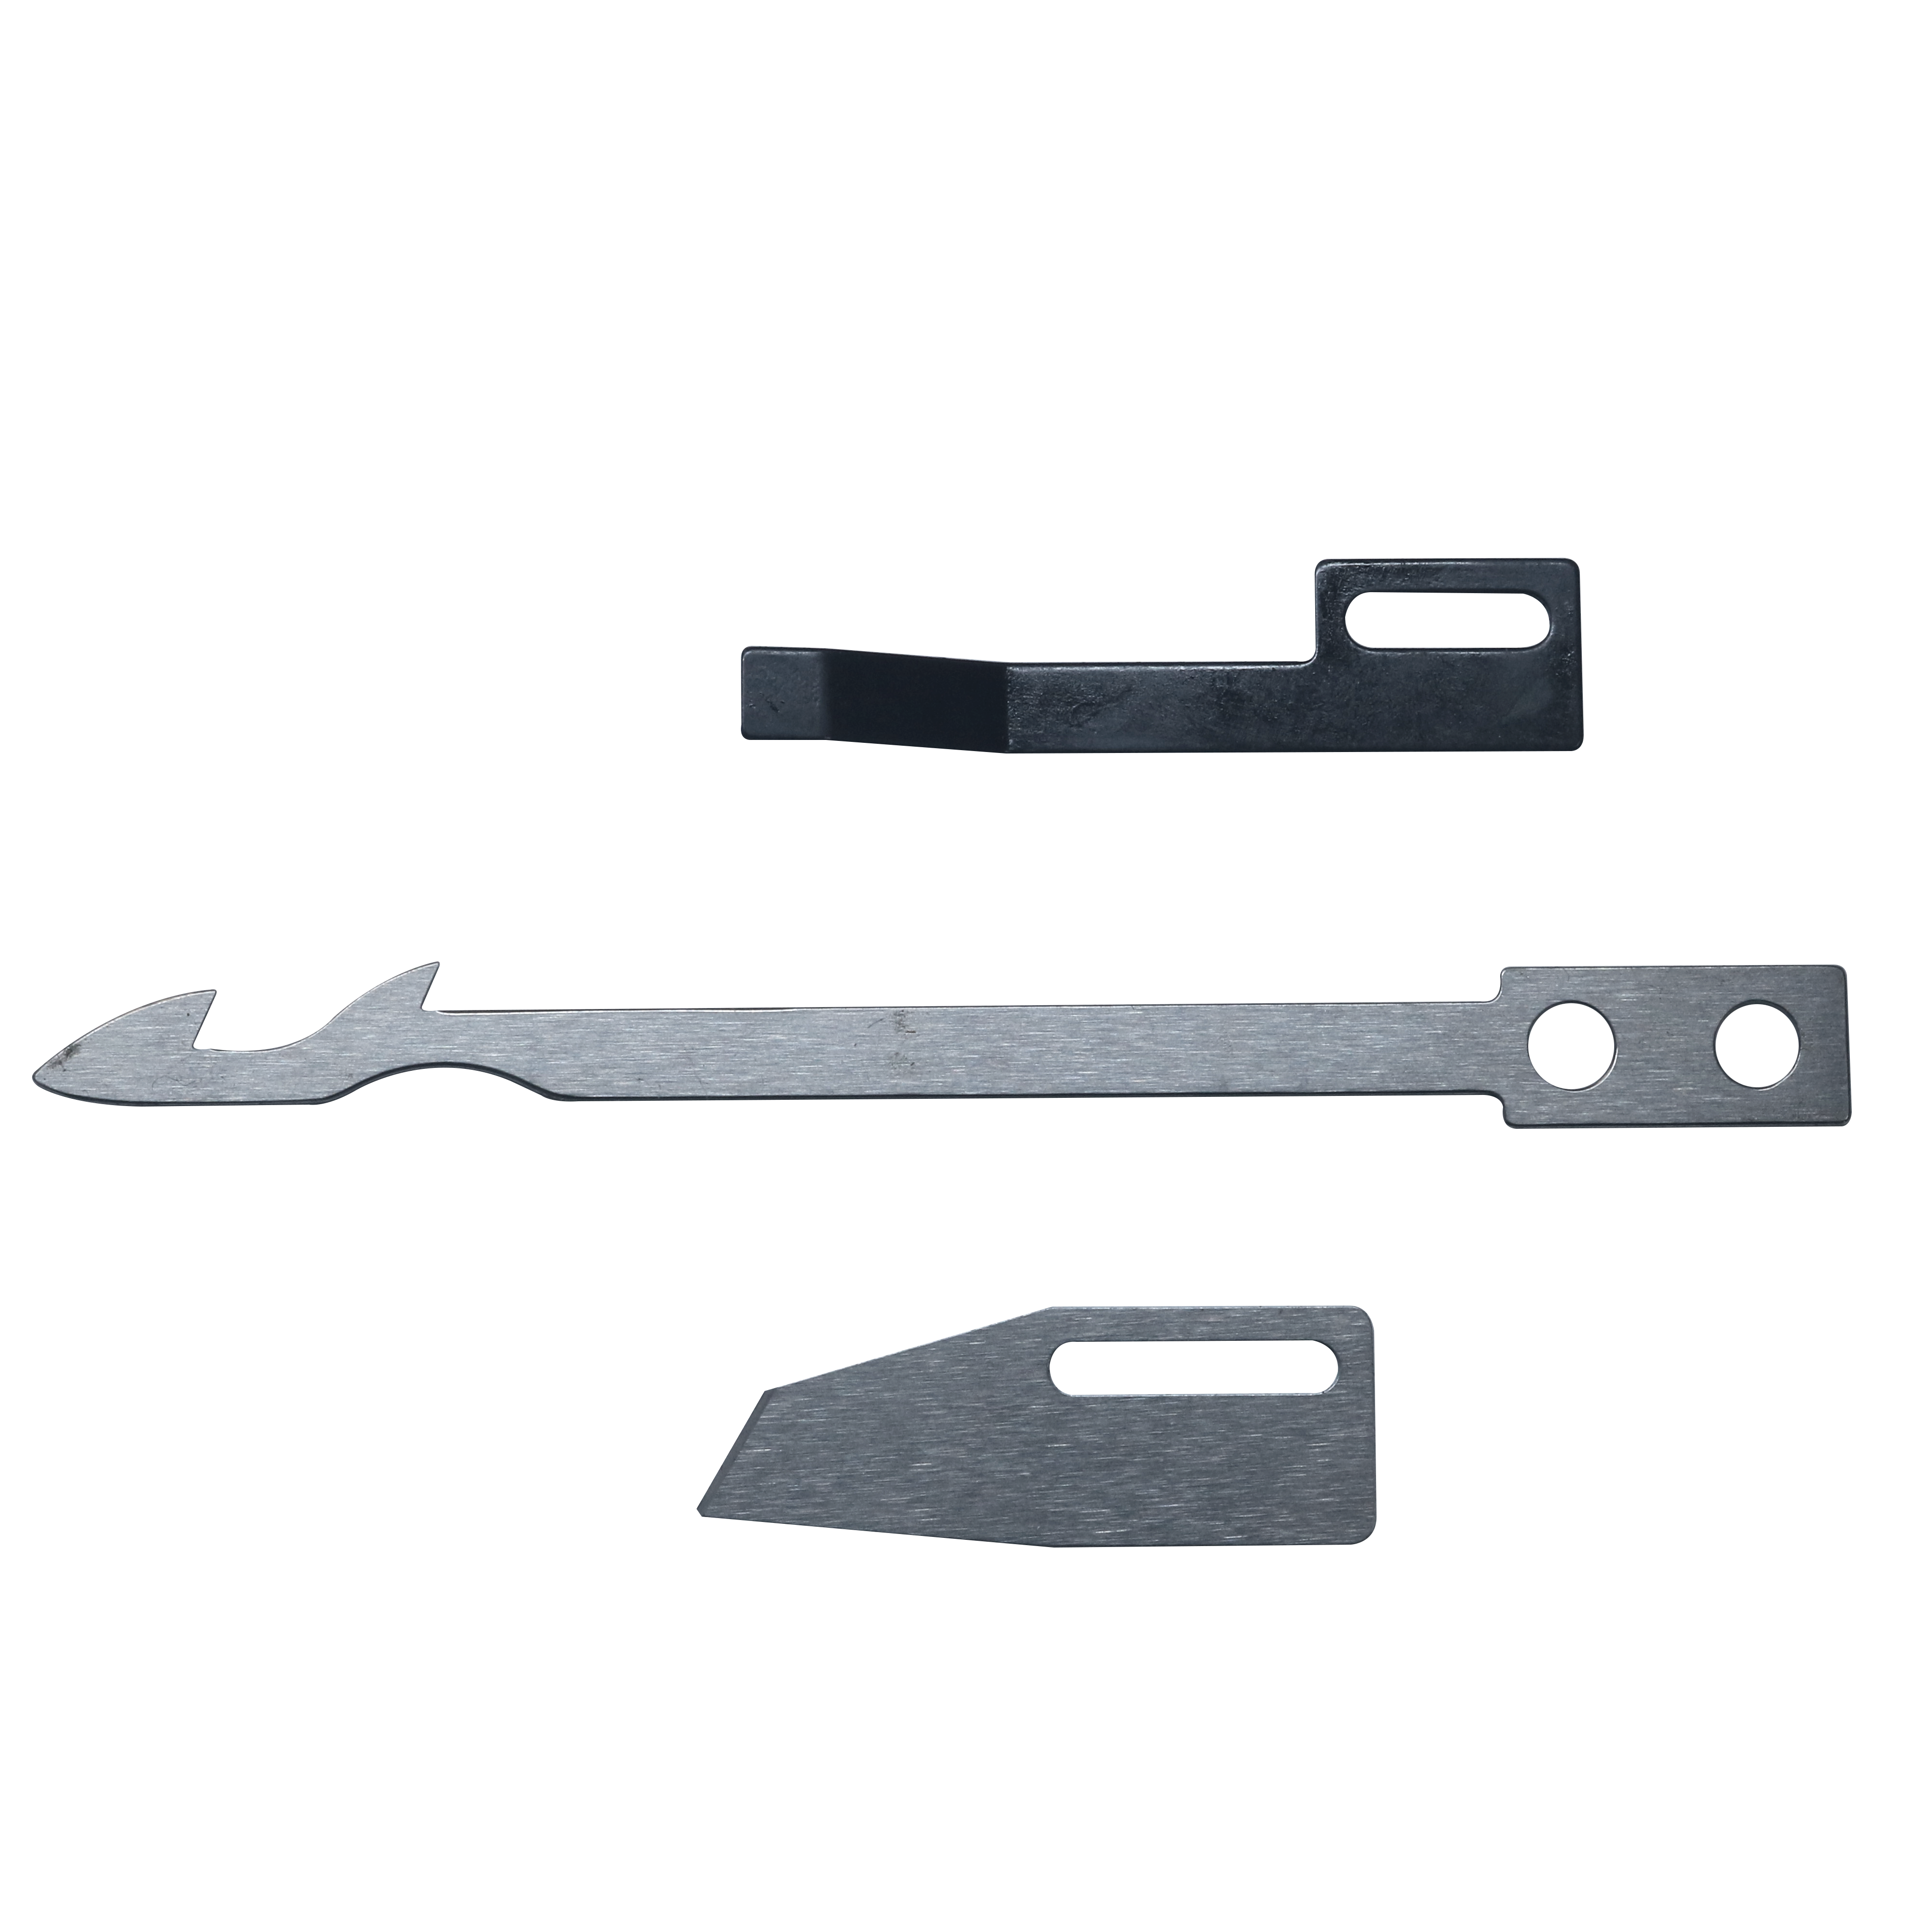 Interlok düz kilit otomatik iplik kesme cihazları aksesuarları UT bıçak yedek parçaları SHINGLING YAMATO orijinal hareketli bıçak sabit bıçak düz yaylı kelepçe yayı